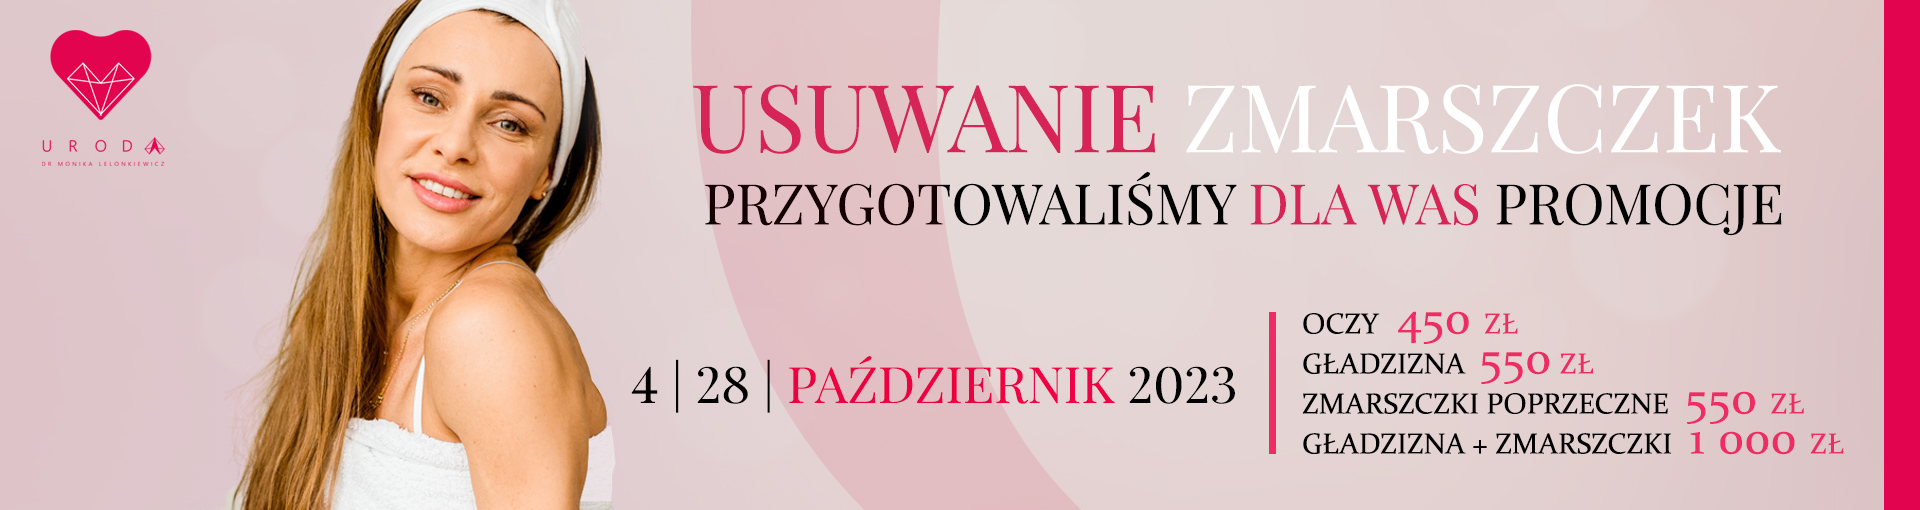 Usuwanie Zmarszczek – 4 i 28 Października 2023